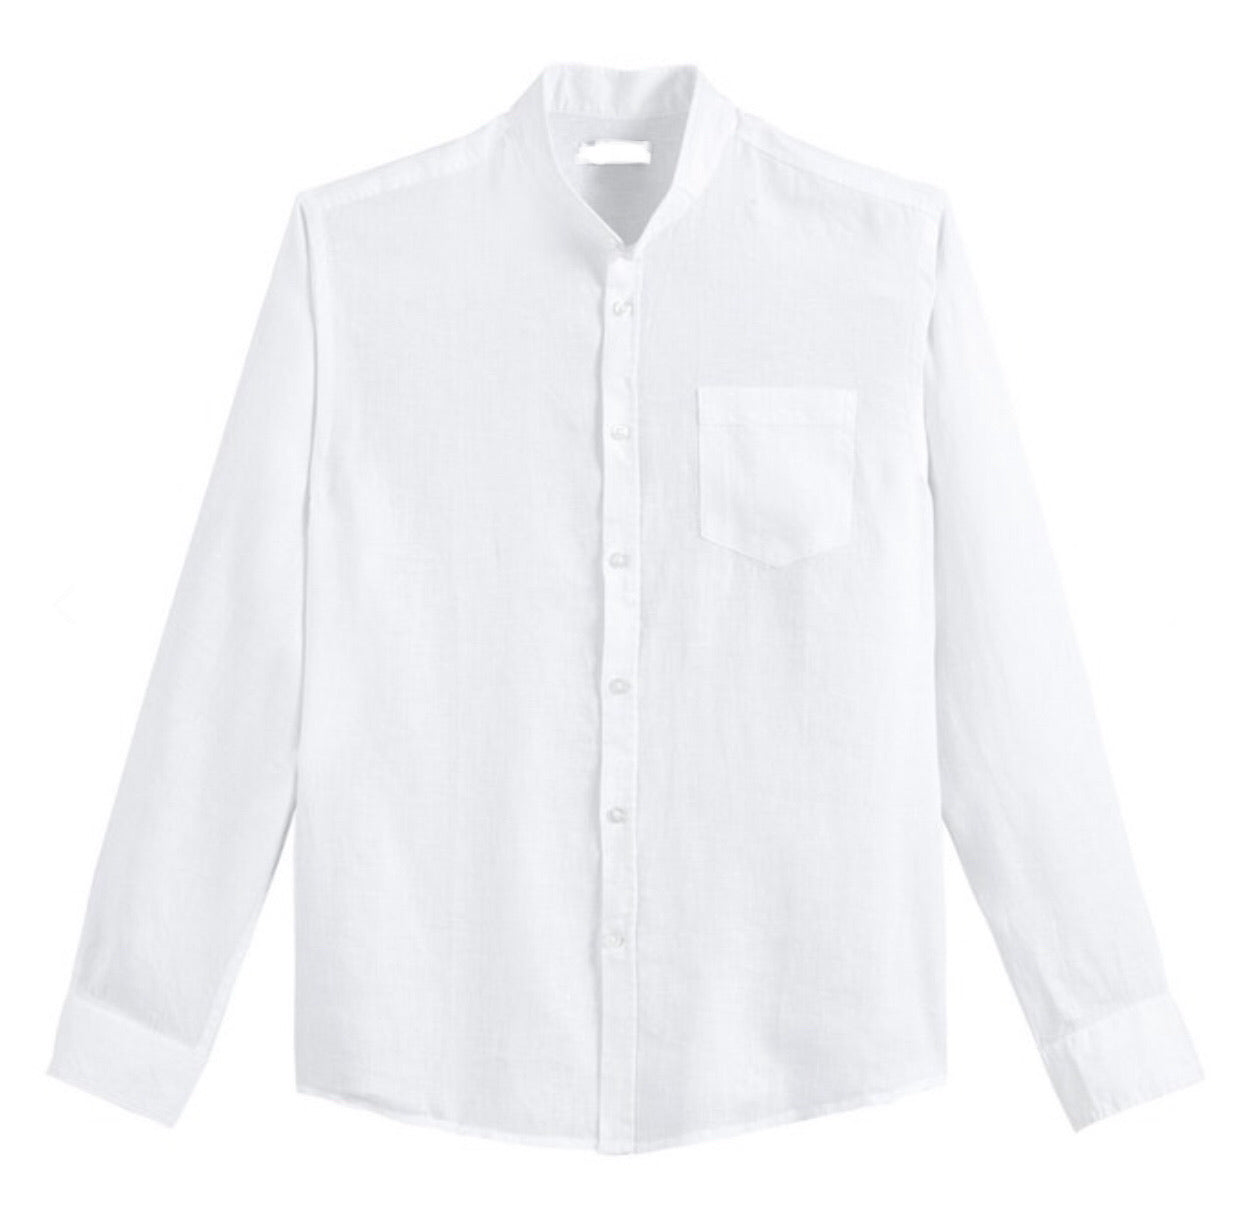 The Summer Linen Mandarin Shirt - Up to Size XXXL